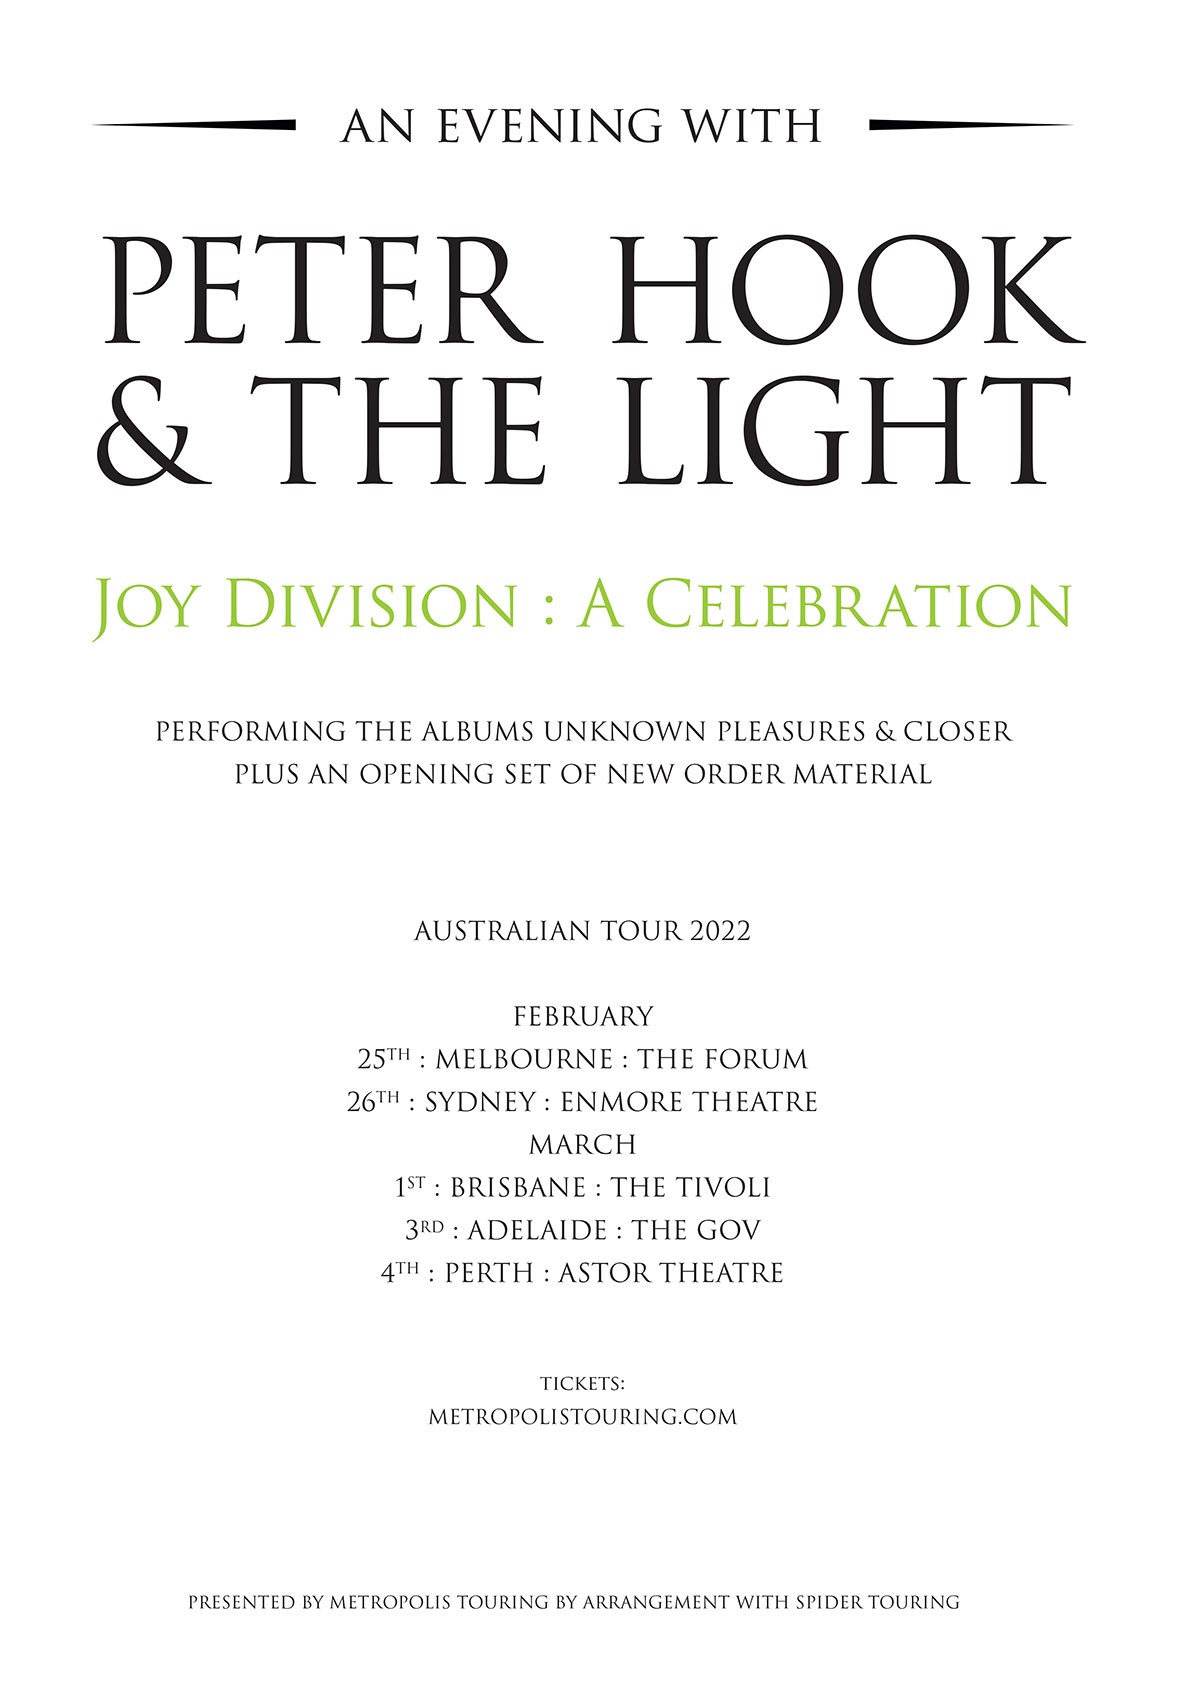 Peter Hook & The Light – Joy Division: A Celebration 2022 Australian Tour Announcement